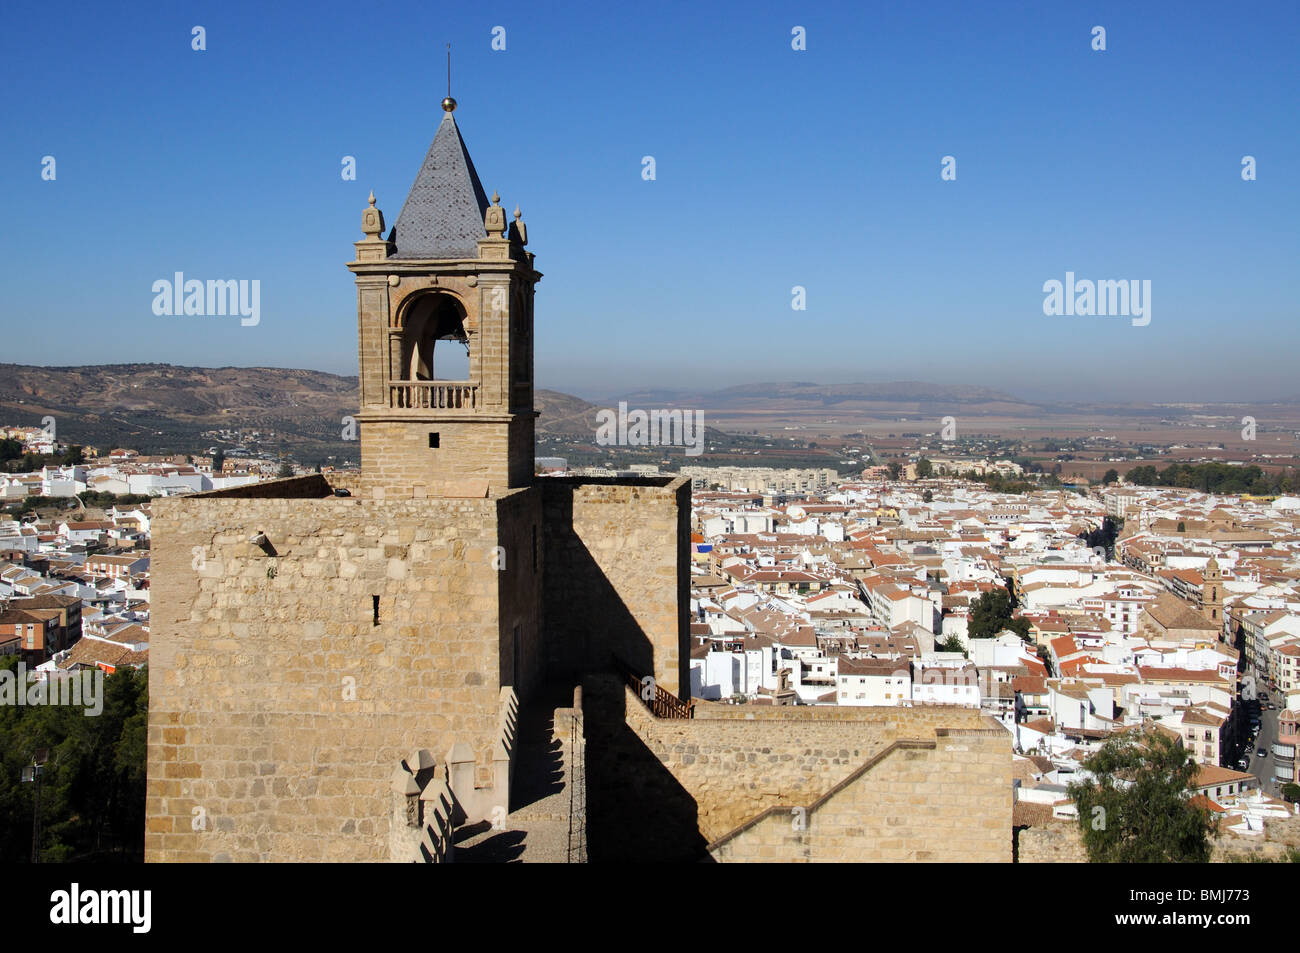 Il castello arabo merlature e torre campanaria, Antequera, provincia di Malaga, Andalusia, Spagna, Europa occidentale. Foto Stock